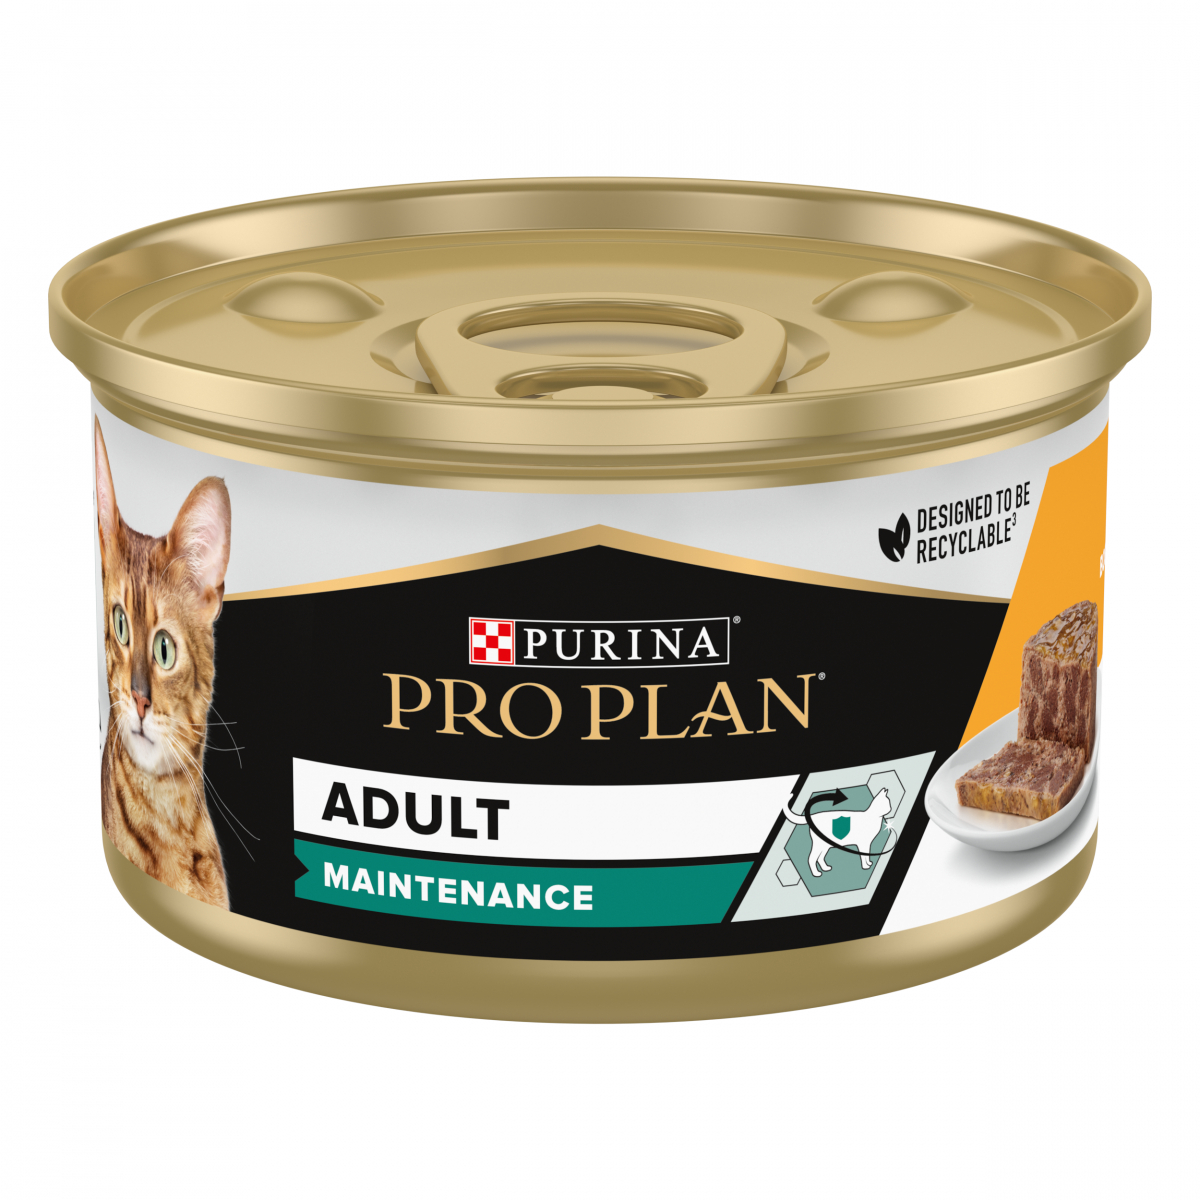 PRO PLAN Adult Dosenfutter für Katzen